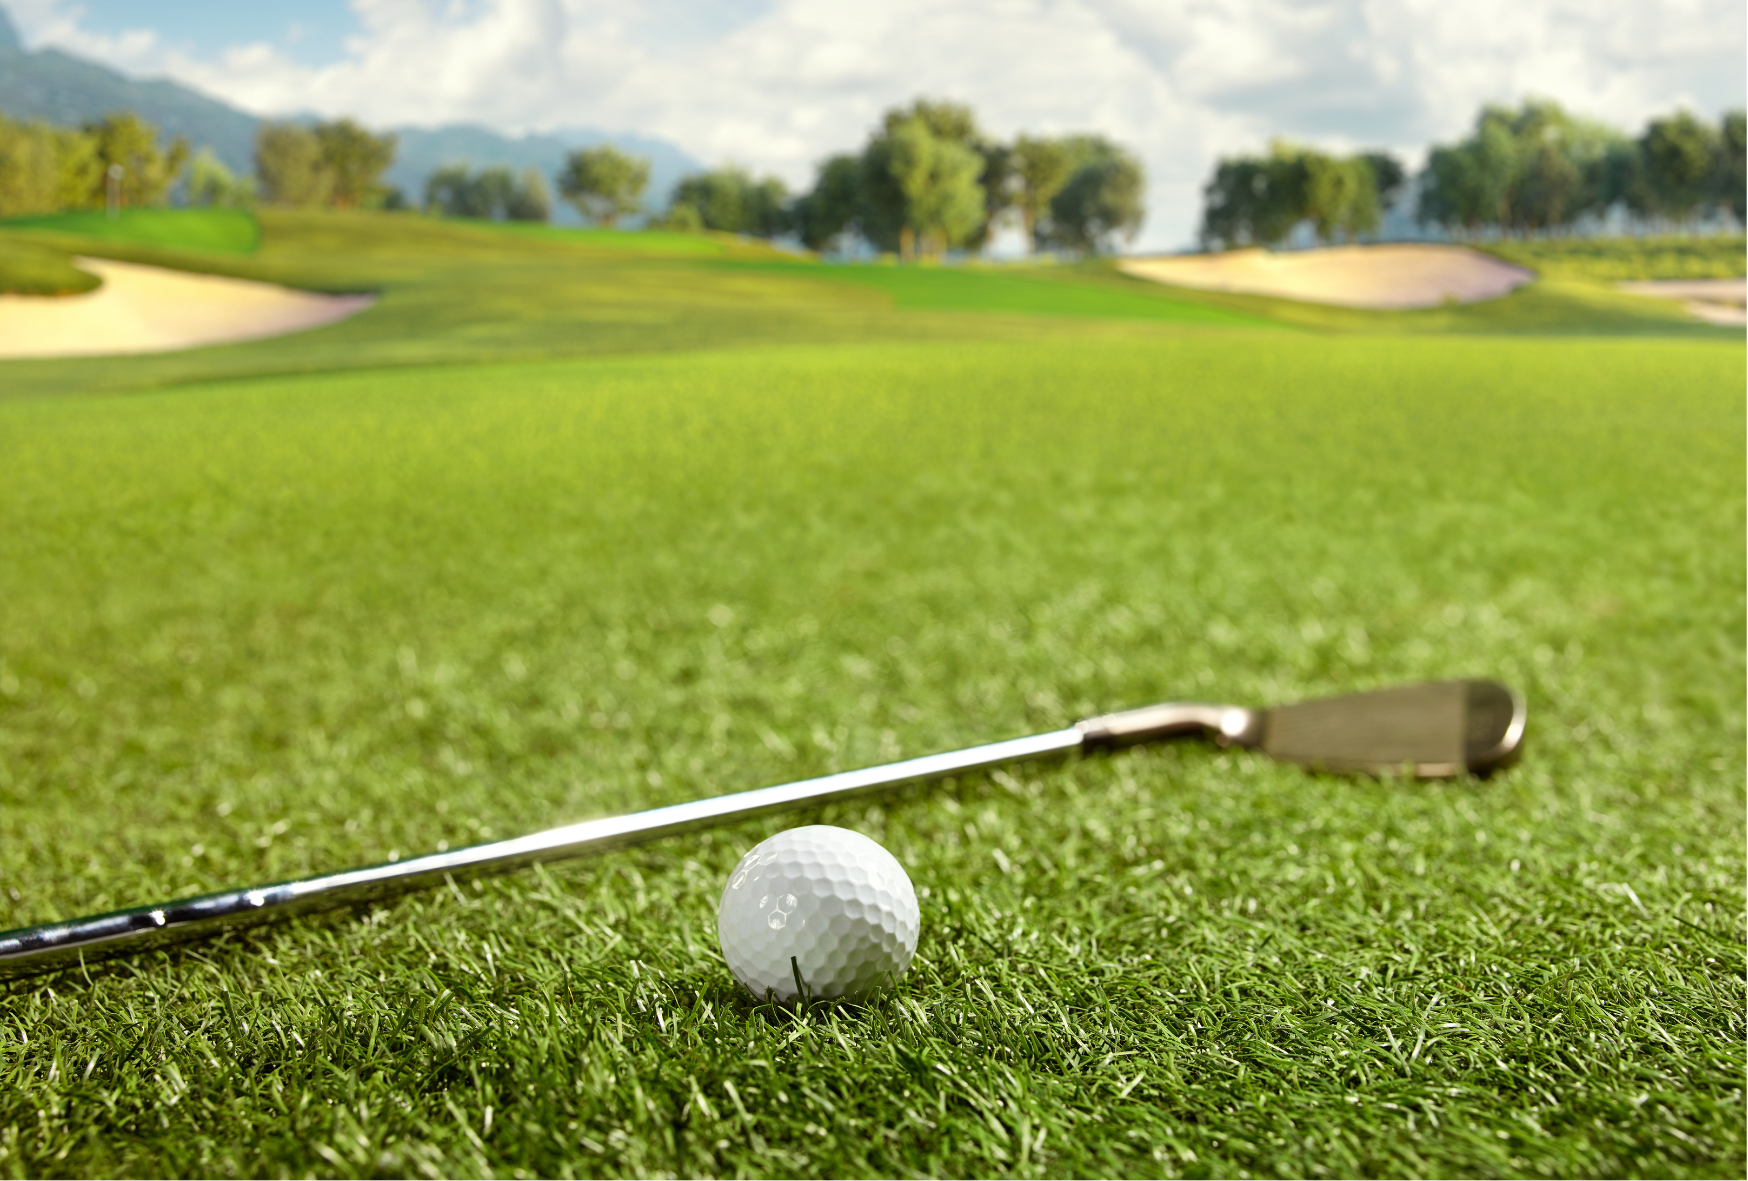 ゴルフを始めたい方へ 初心者のための正しい練習方法について解説します フィットイージー Fit Easy 24時間営業 年中無休のアミューズメント型フィットネスジム